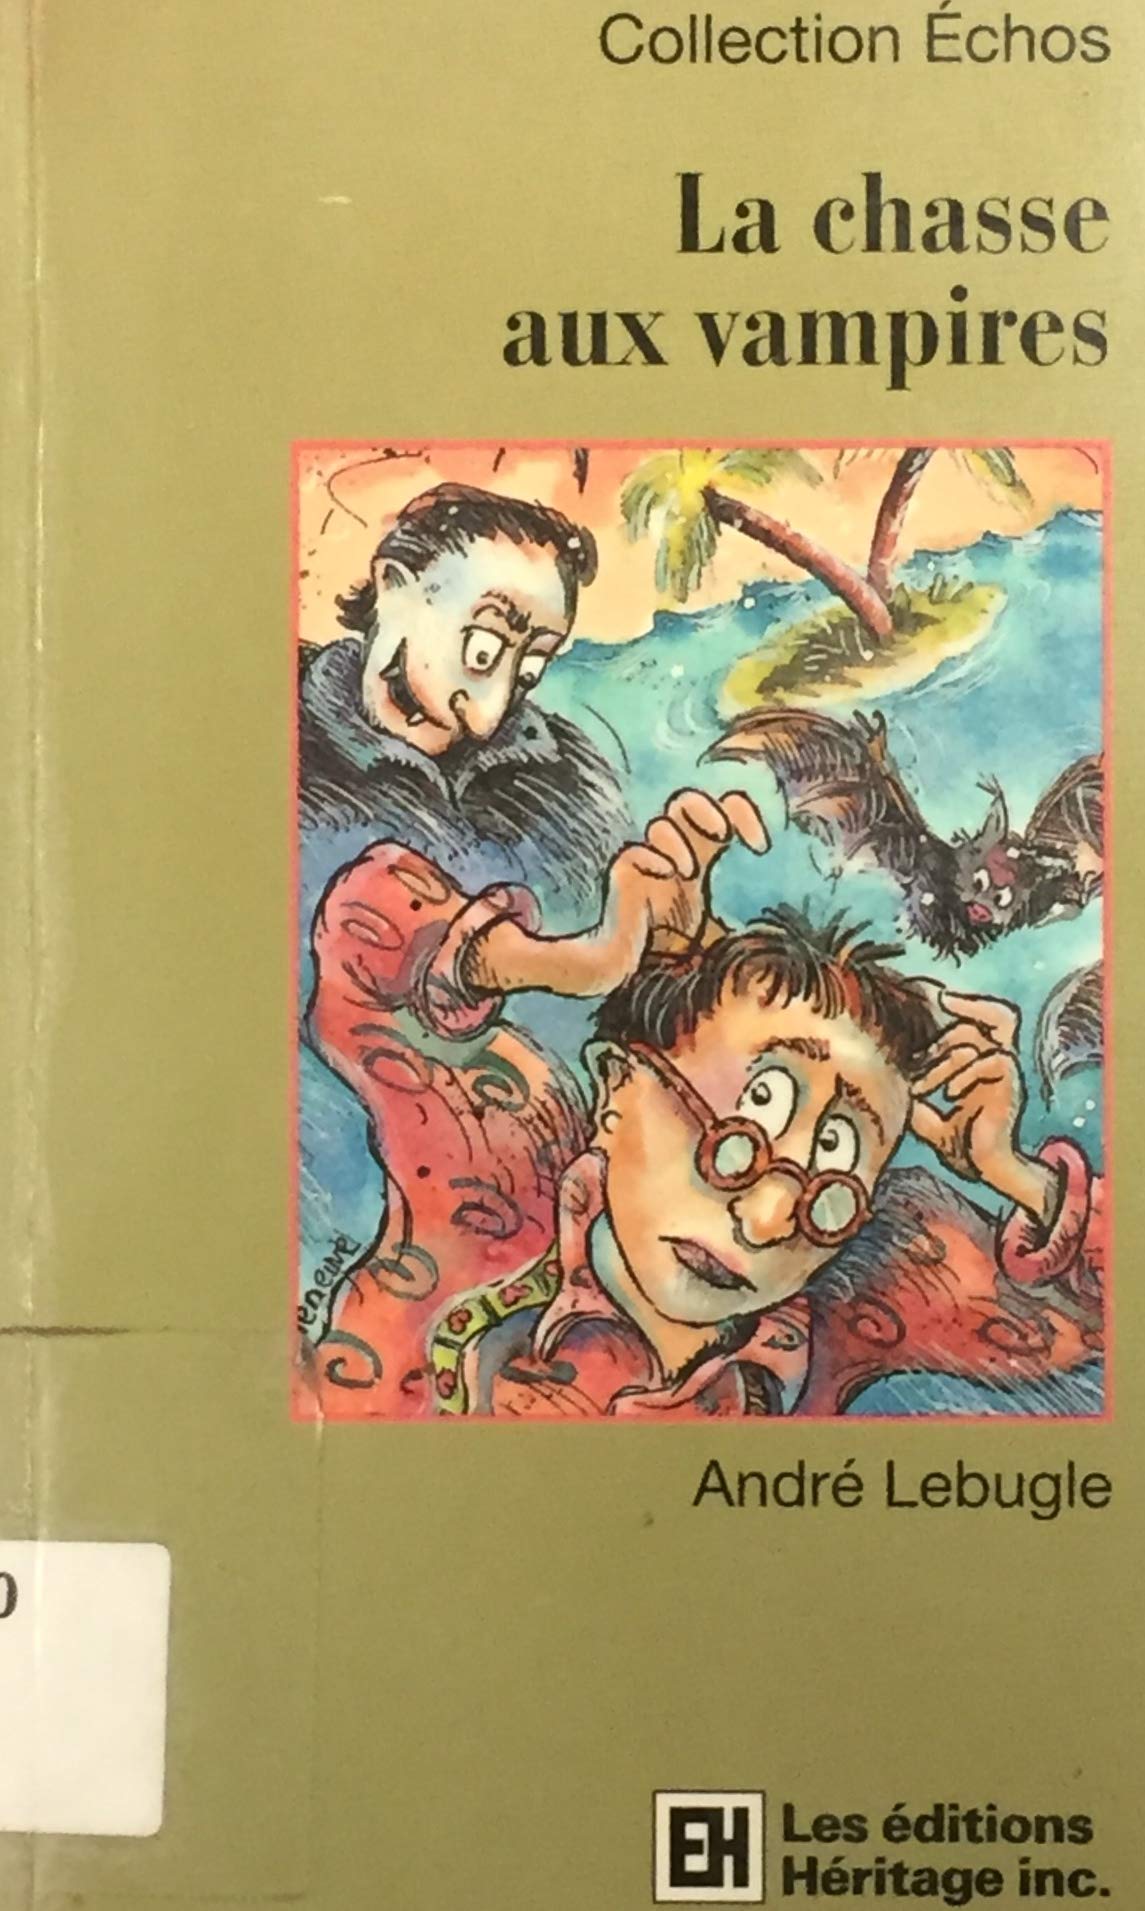 Livre ISBN 2762571456 Collection Échos : La chasse aux vampires (André Lebugle)